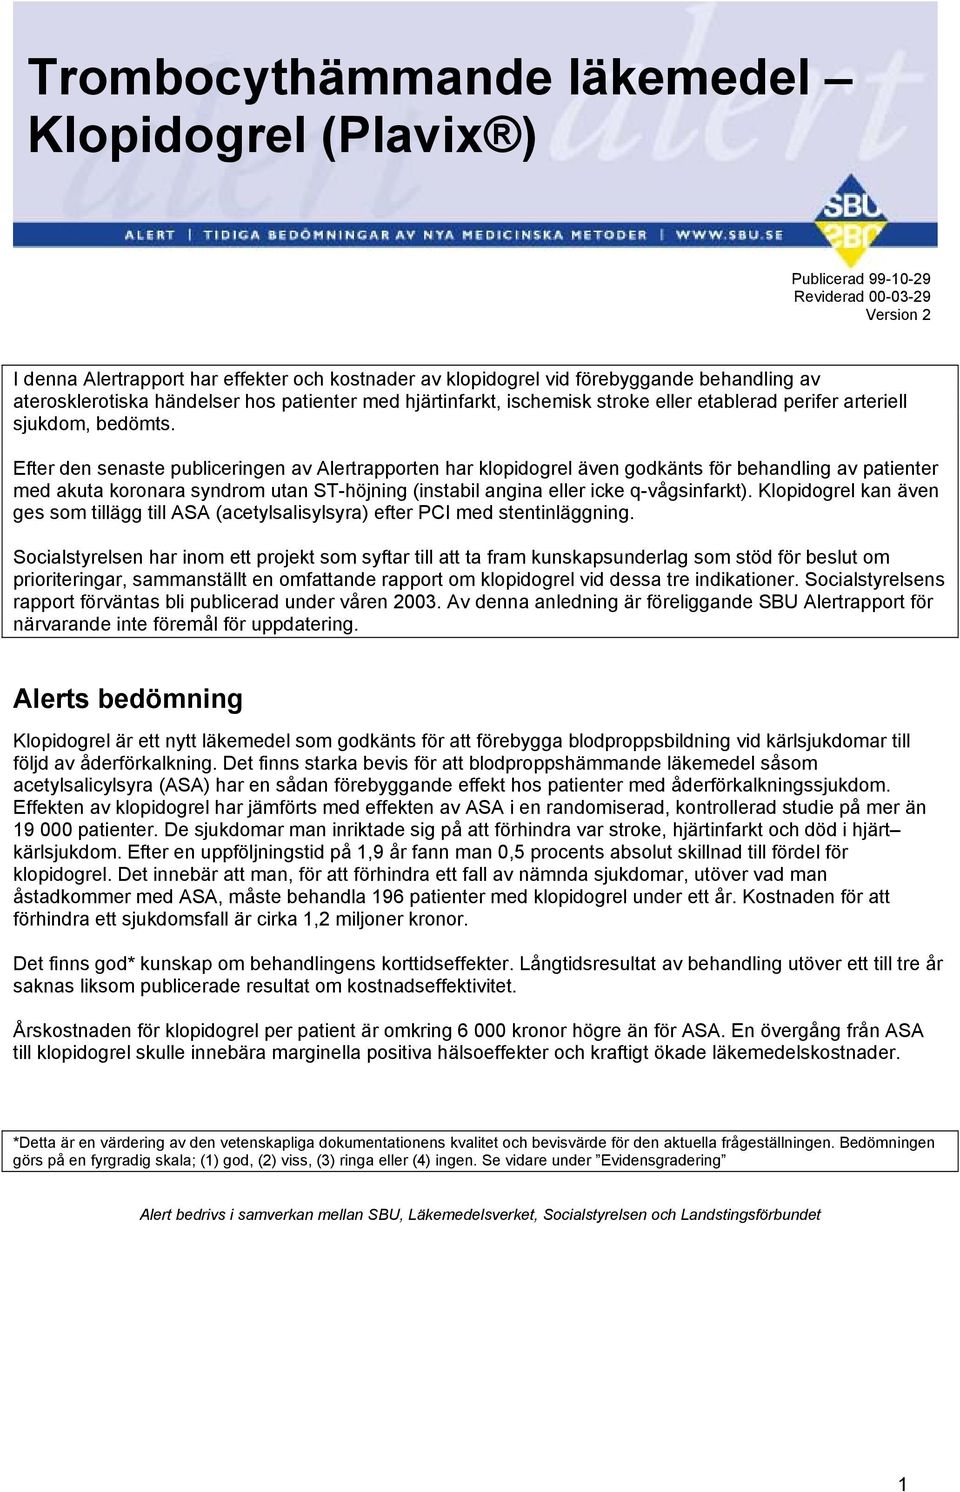 Efter den senaste publiceringen av Alertrapporten har klopidogrel även godkänts för behandling av patienter med akuta koronara syndrom utan ST-höjning (instabil angina eller icke q-vågsinfarkt).